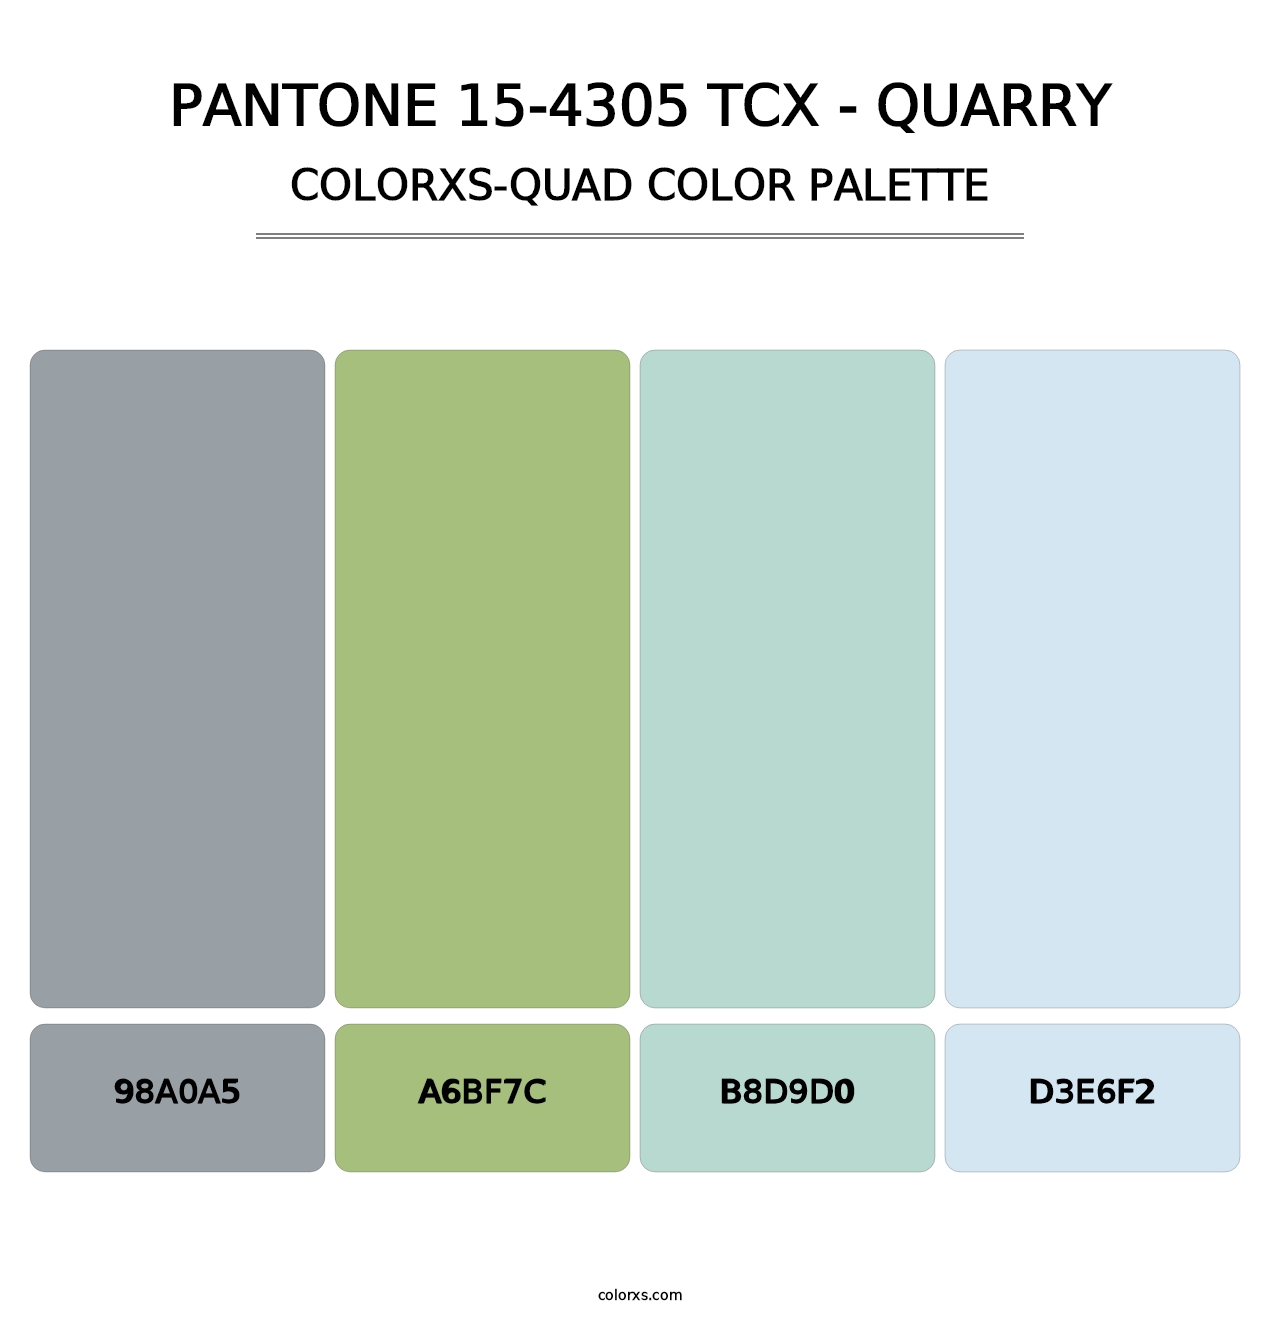 PANTONE 15-4305 TCX - Quarry - Colorxs Quad Palette